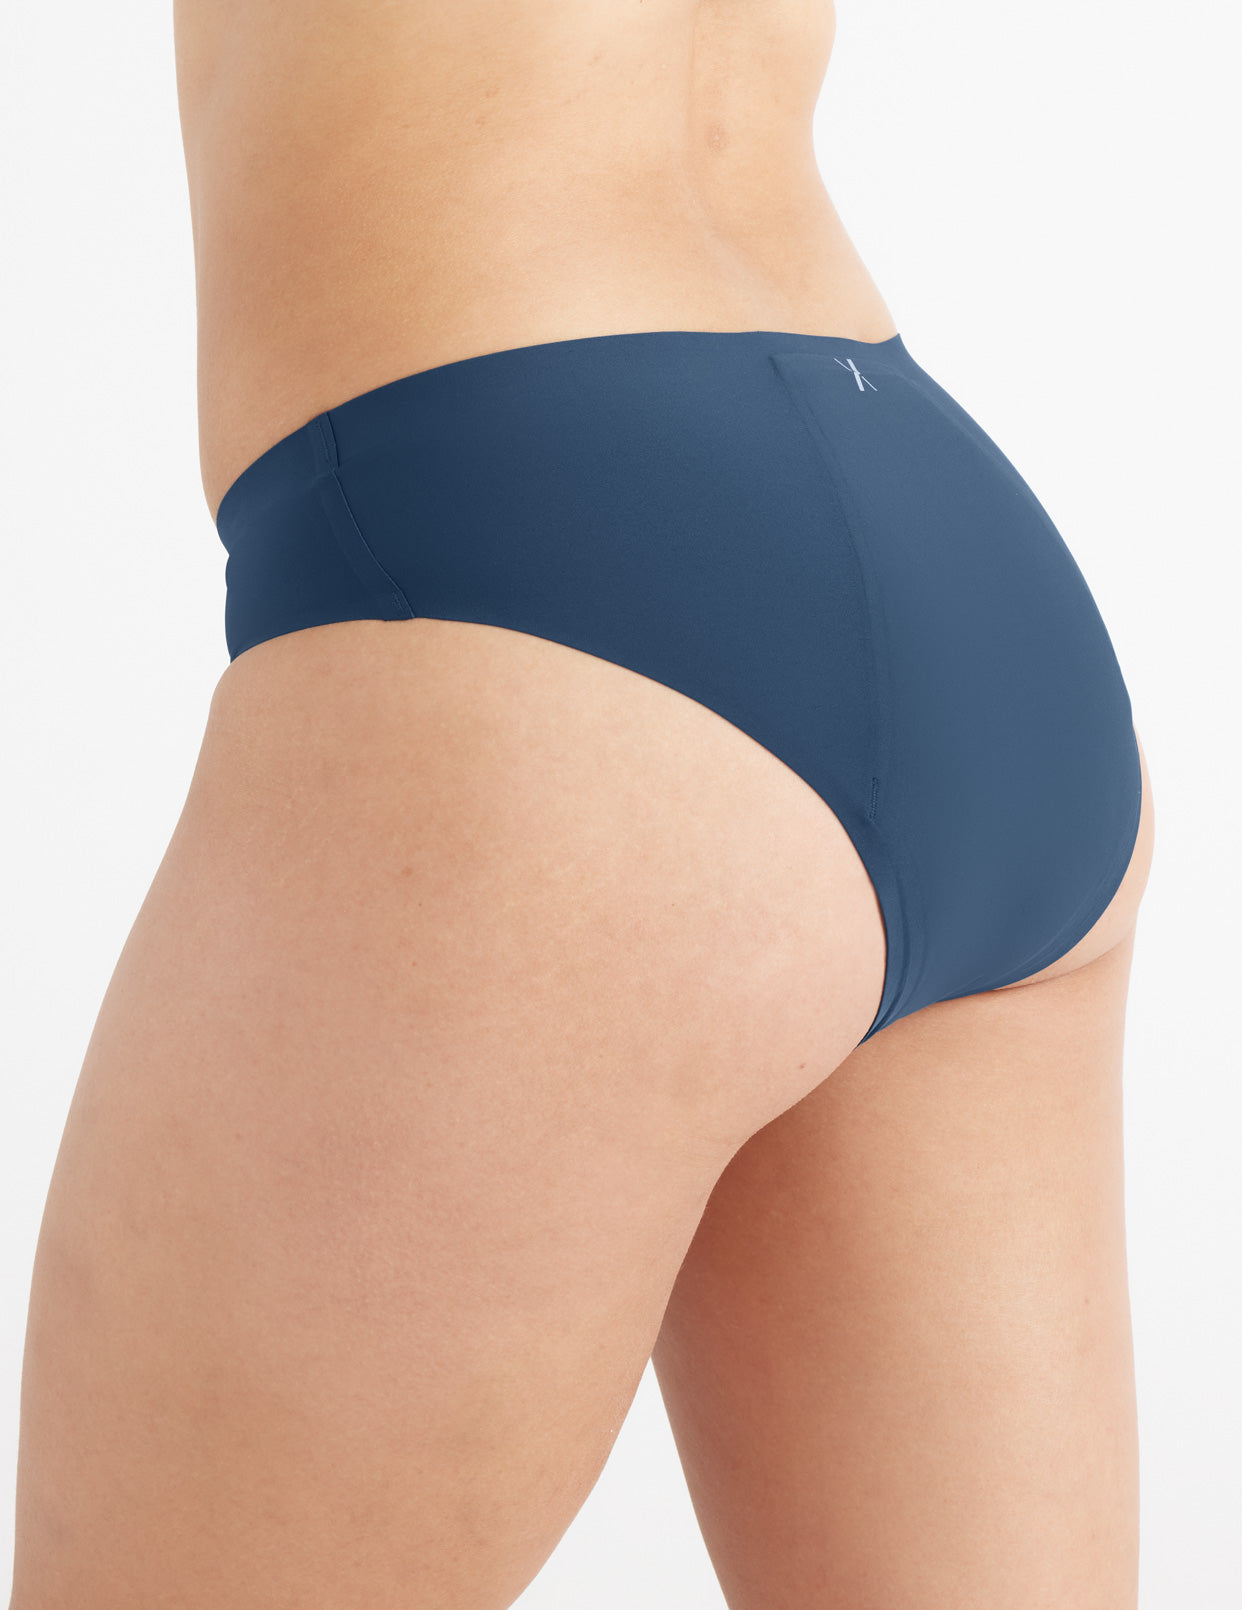 HUPOM Knix Underwear Underwear For Women In Clothing Briefs